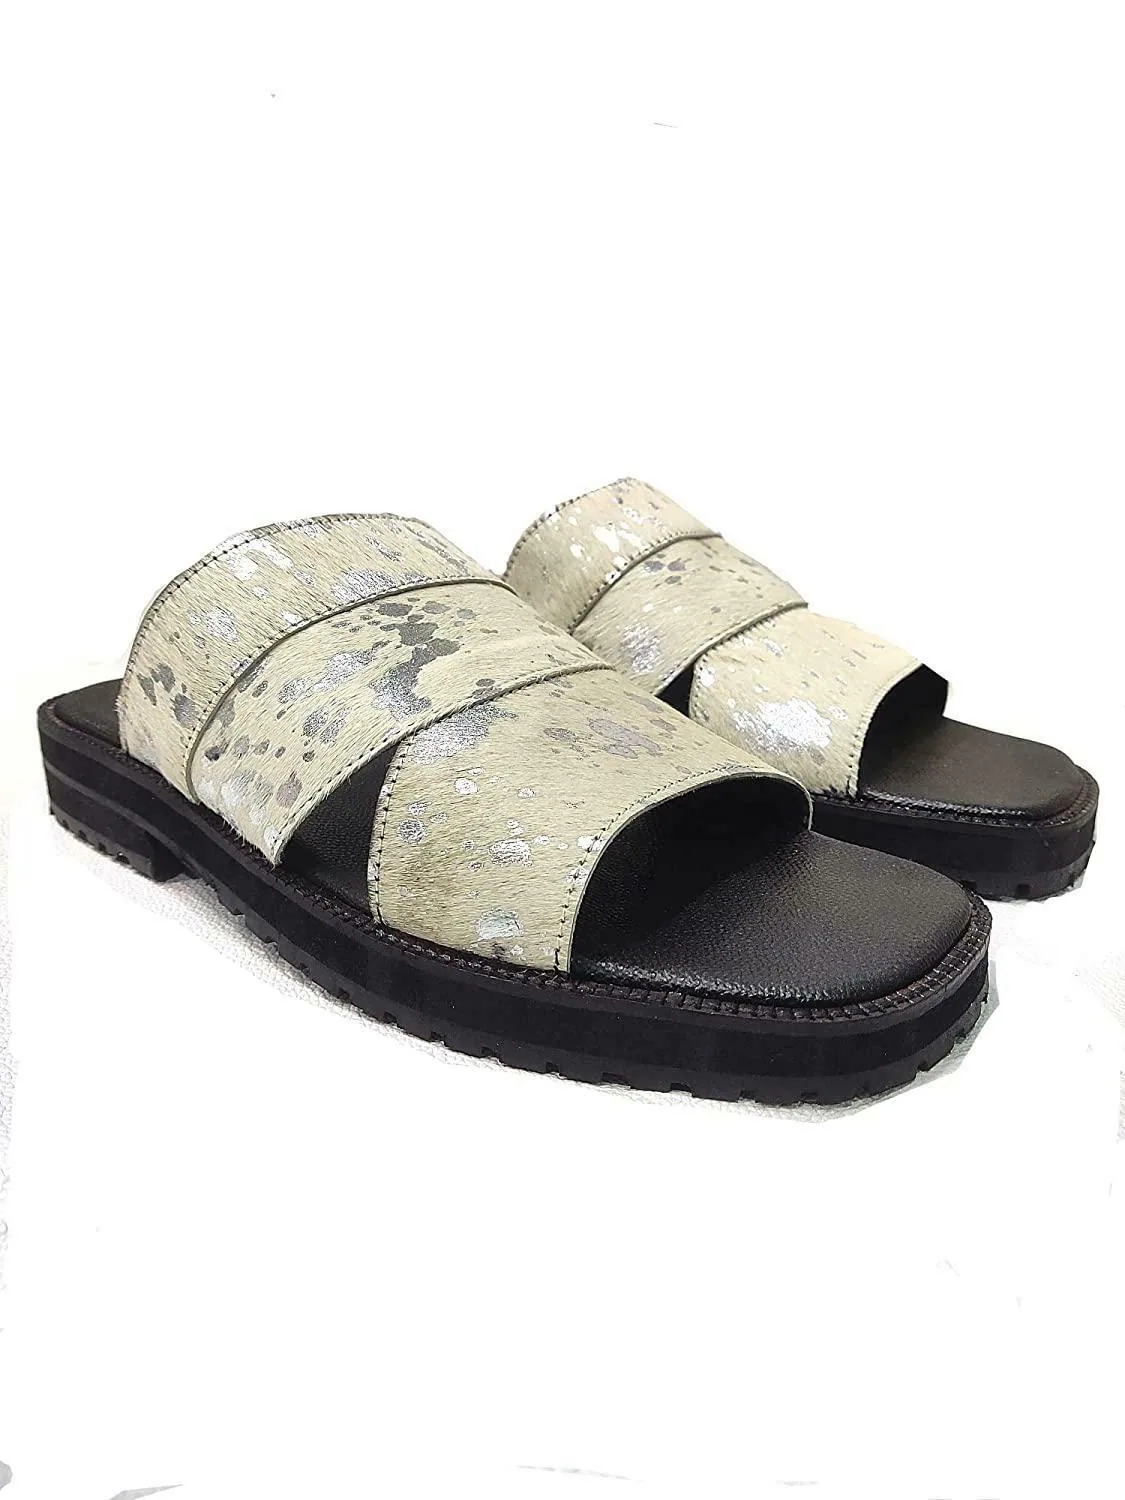 Sam & Libby White Sandals Size 6 | eBay